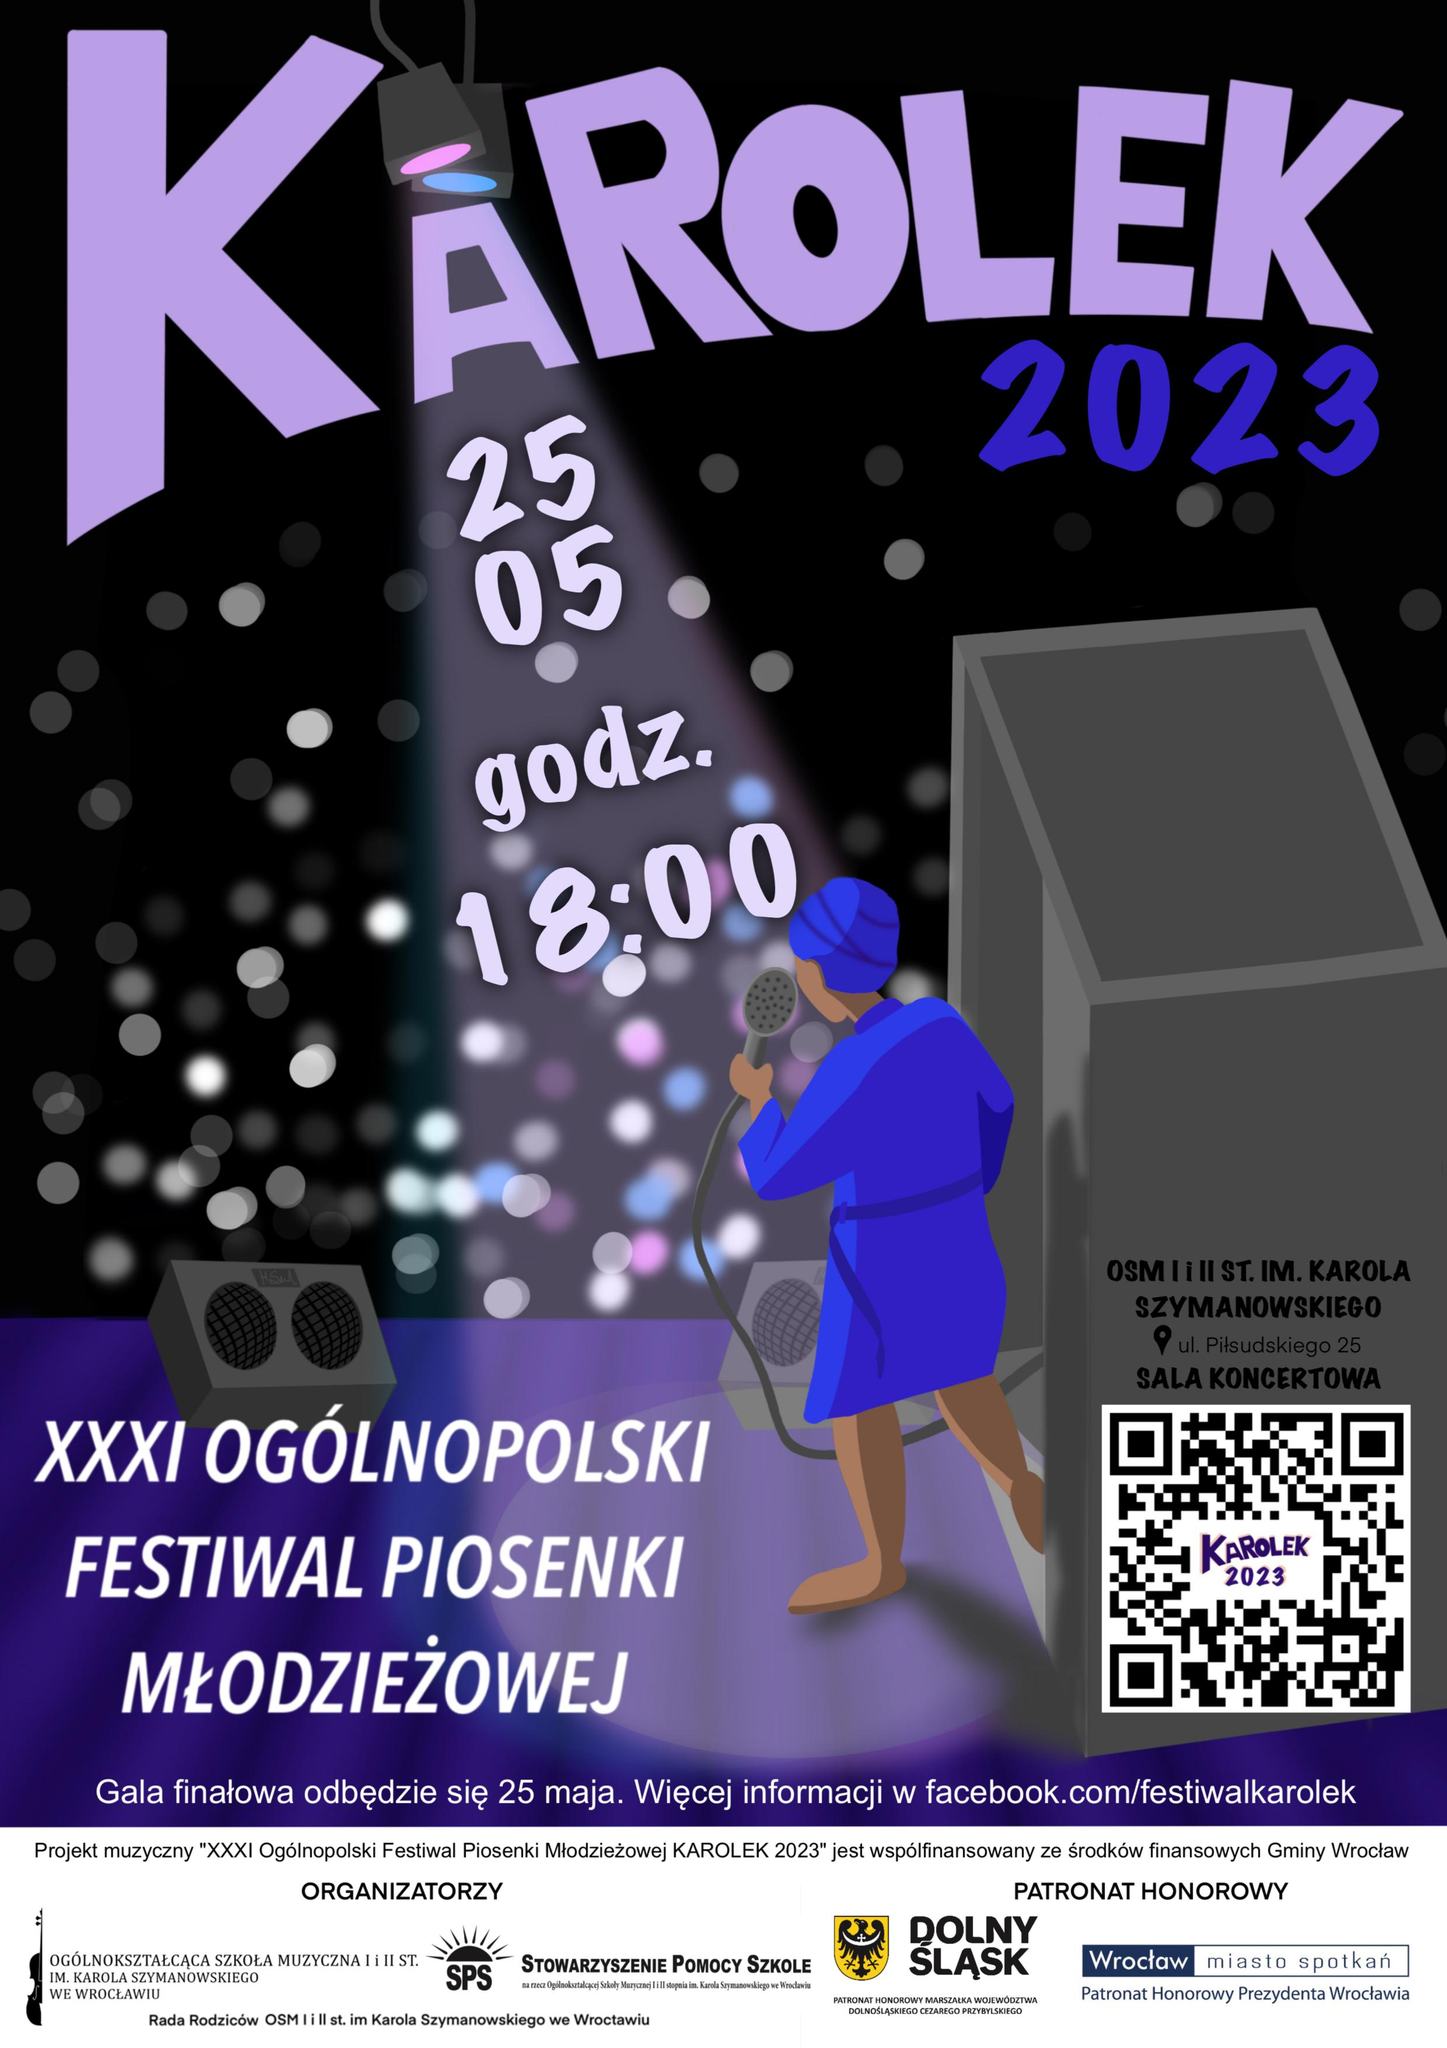 plakat w tonacji granatowo- fioletowej, zawiera elementy graficzne, mikrofon, nuty, logo szkoły i napis "XXXI Ogólnopolski Festiwal Piosenki młodzieżowej"